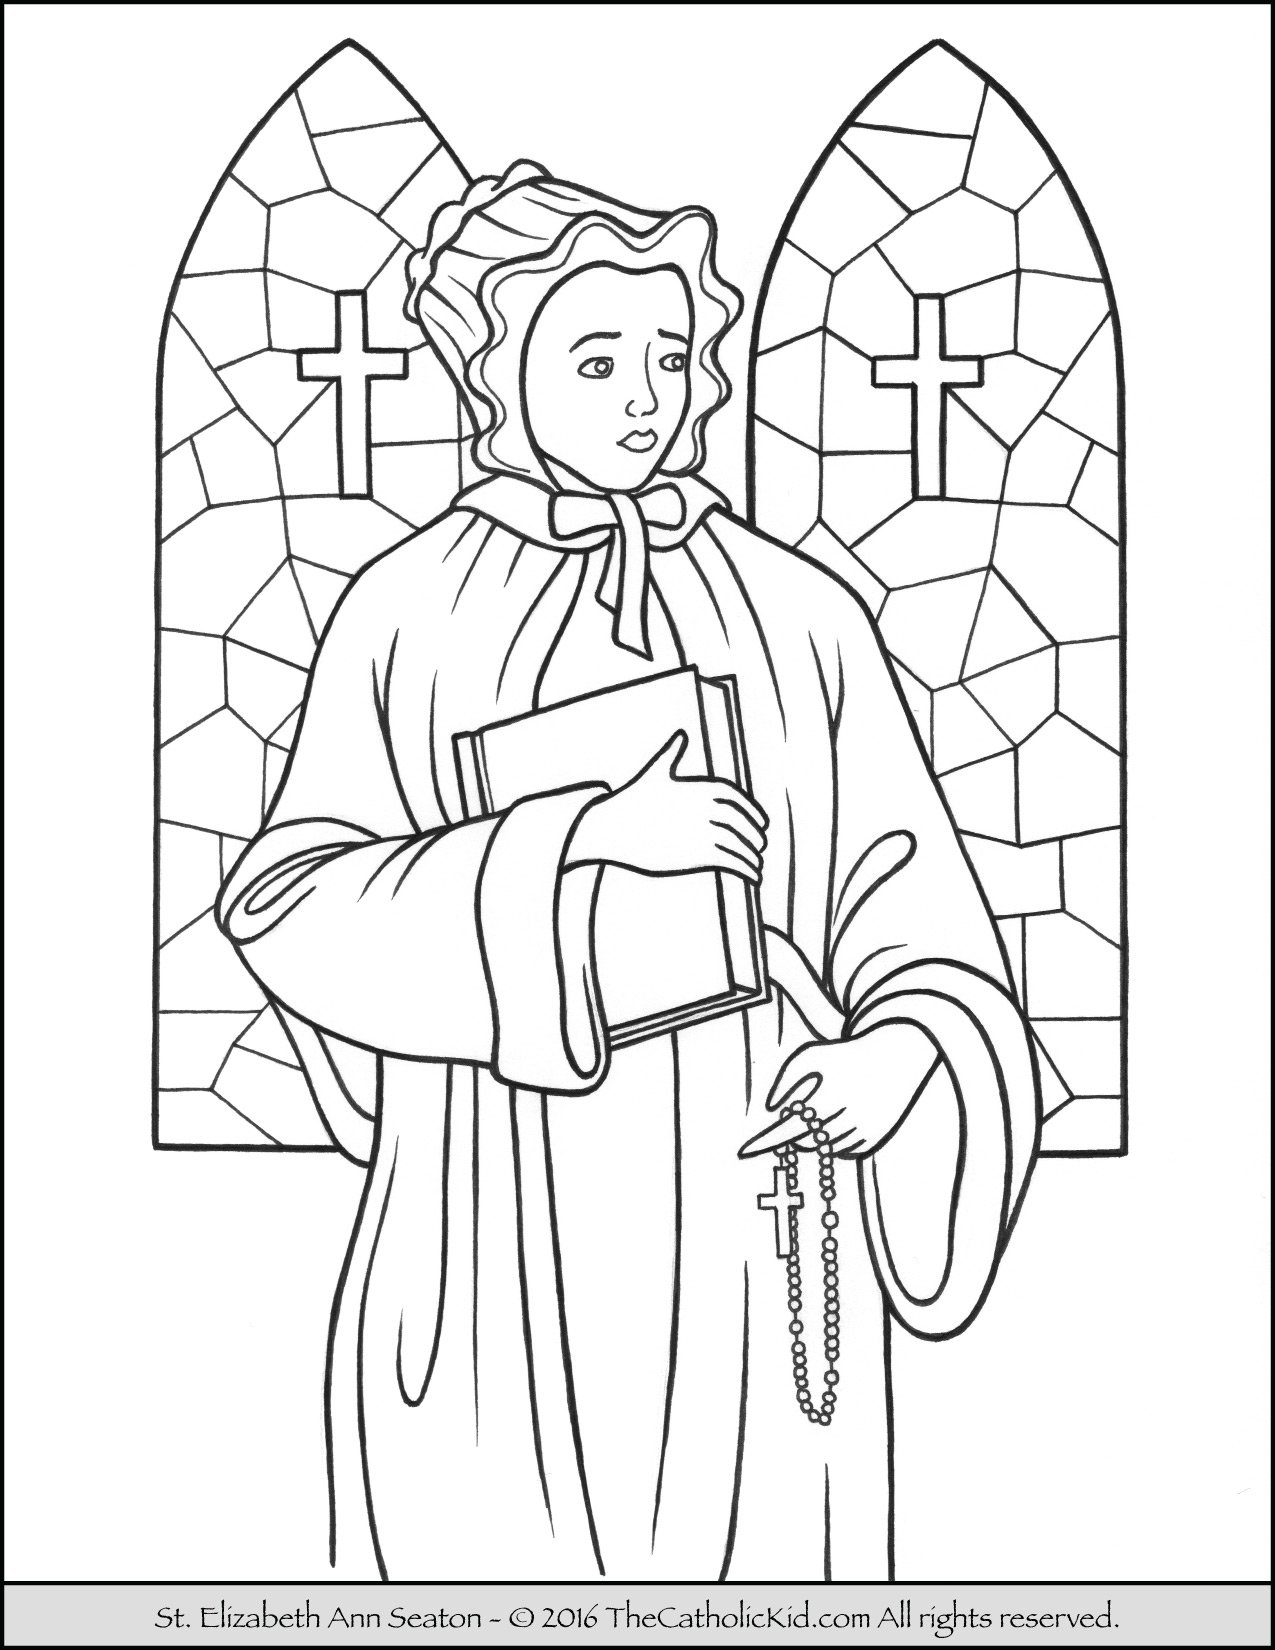 Saint elizabeth ann seaton coloring page